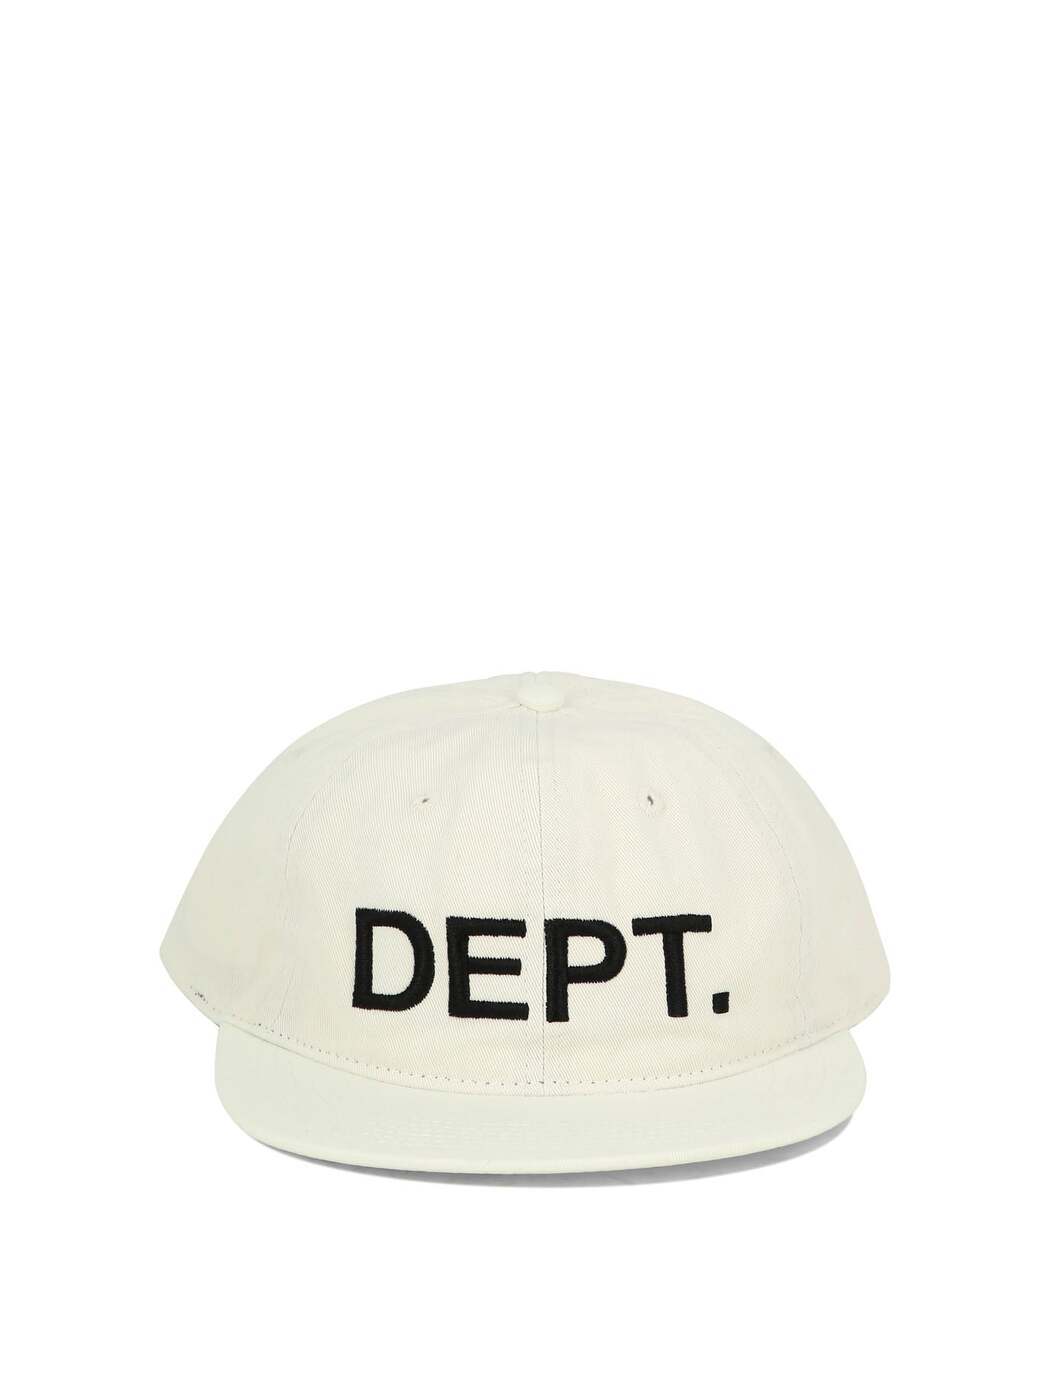 GALLERY DEPT ギャラリーデプト ホワイト White 帽子 メンズ 8308710572181 【関税 送料無料】【ラッピング無料】 ba